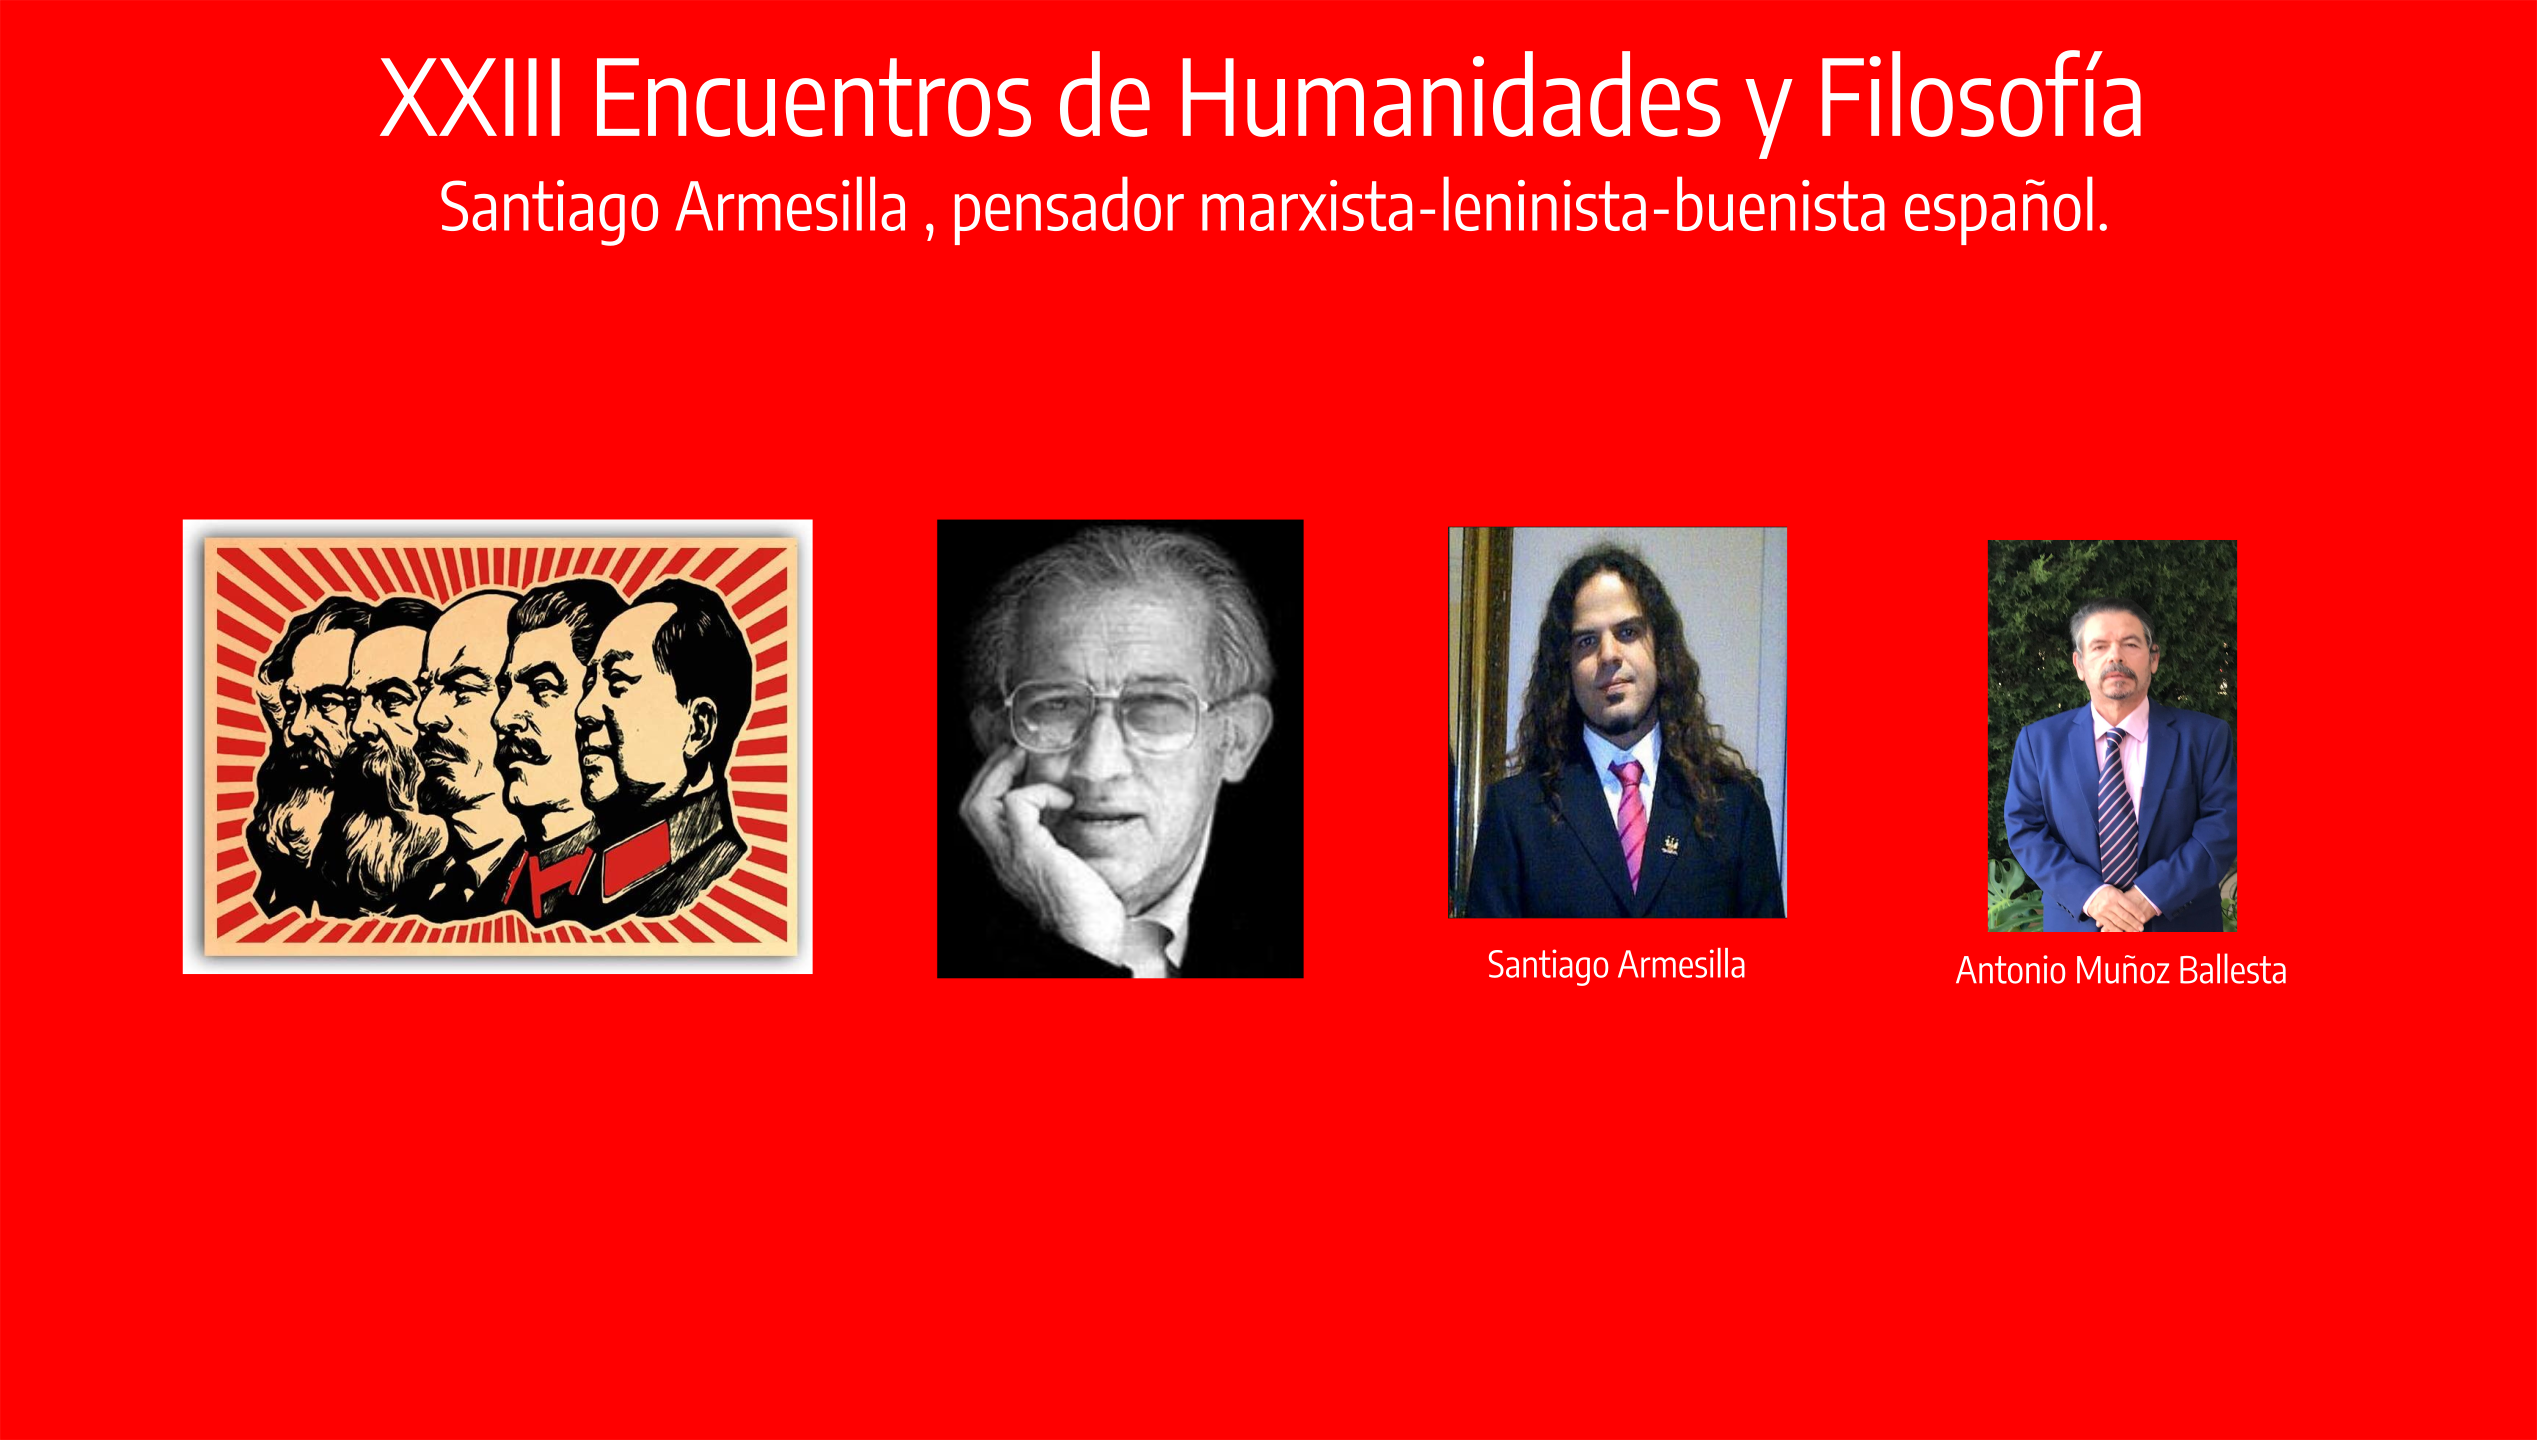 XXI Encuentros de Humanidades y Filosfofía, José Luis Pardos, Mario Bunge, Antonio Muñoz Ballesta